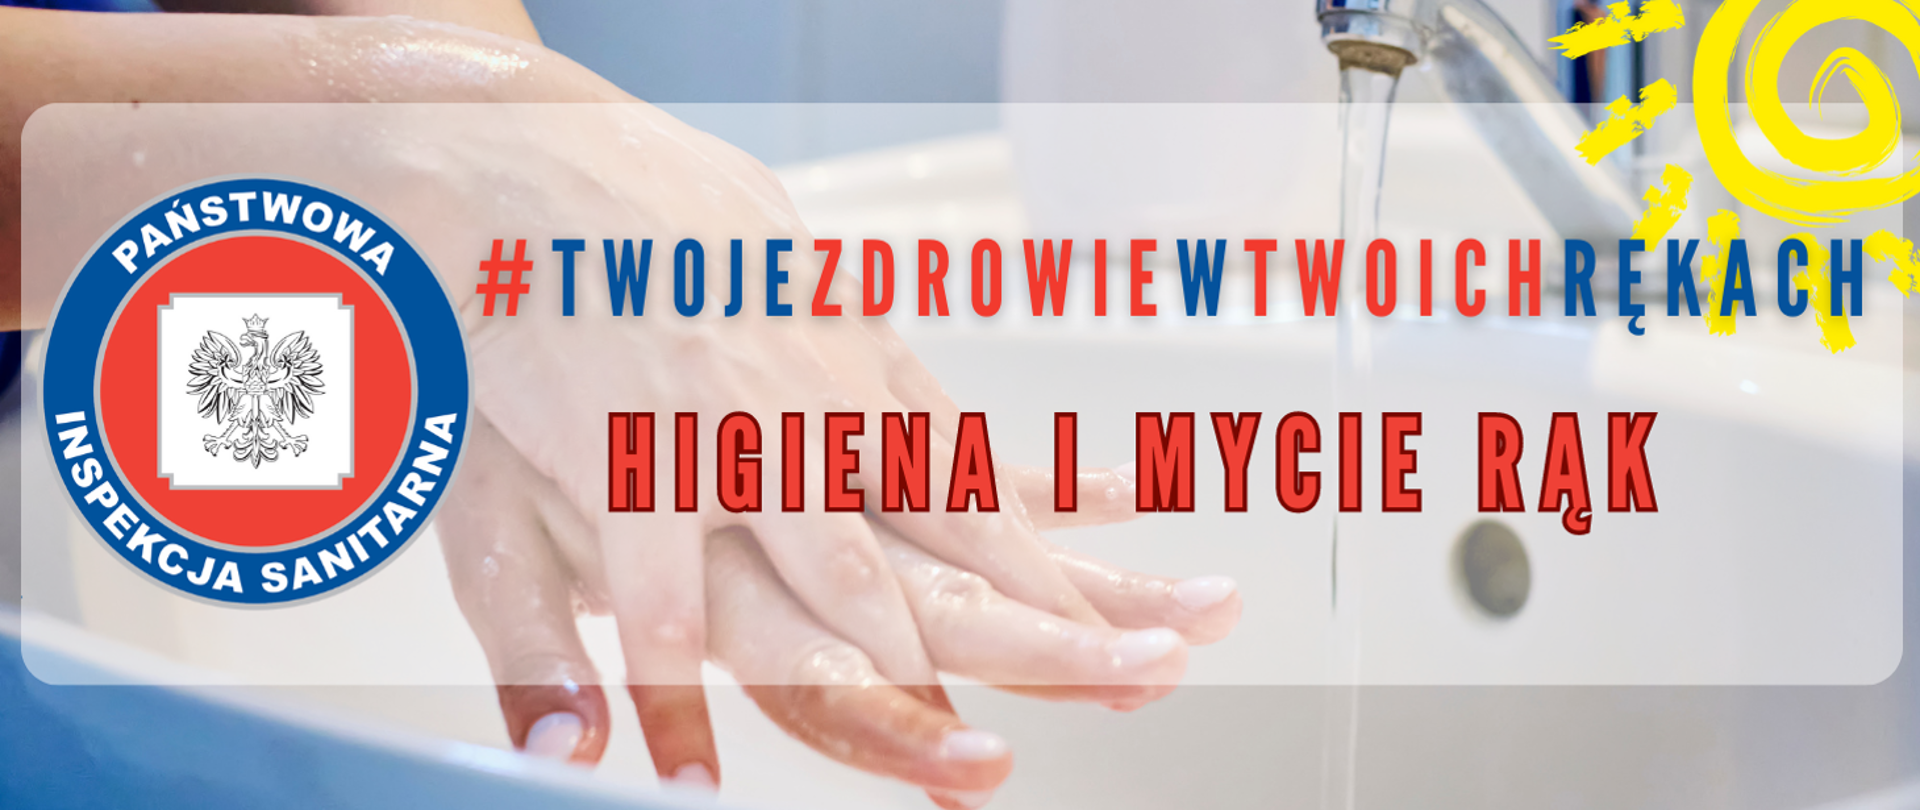 napis higiena i mycie rąk